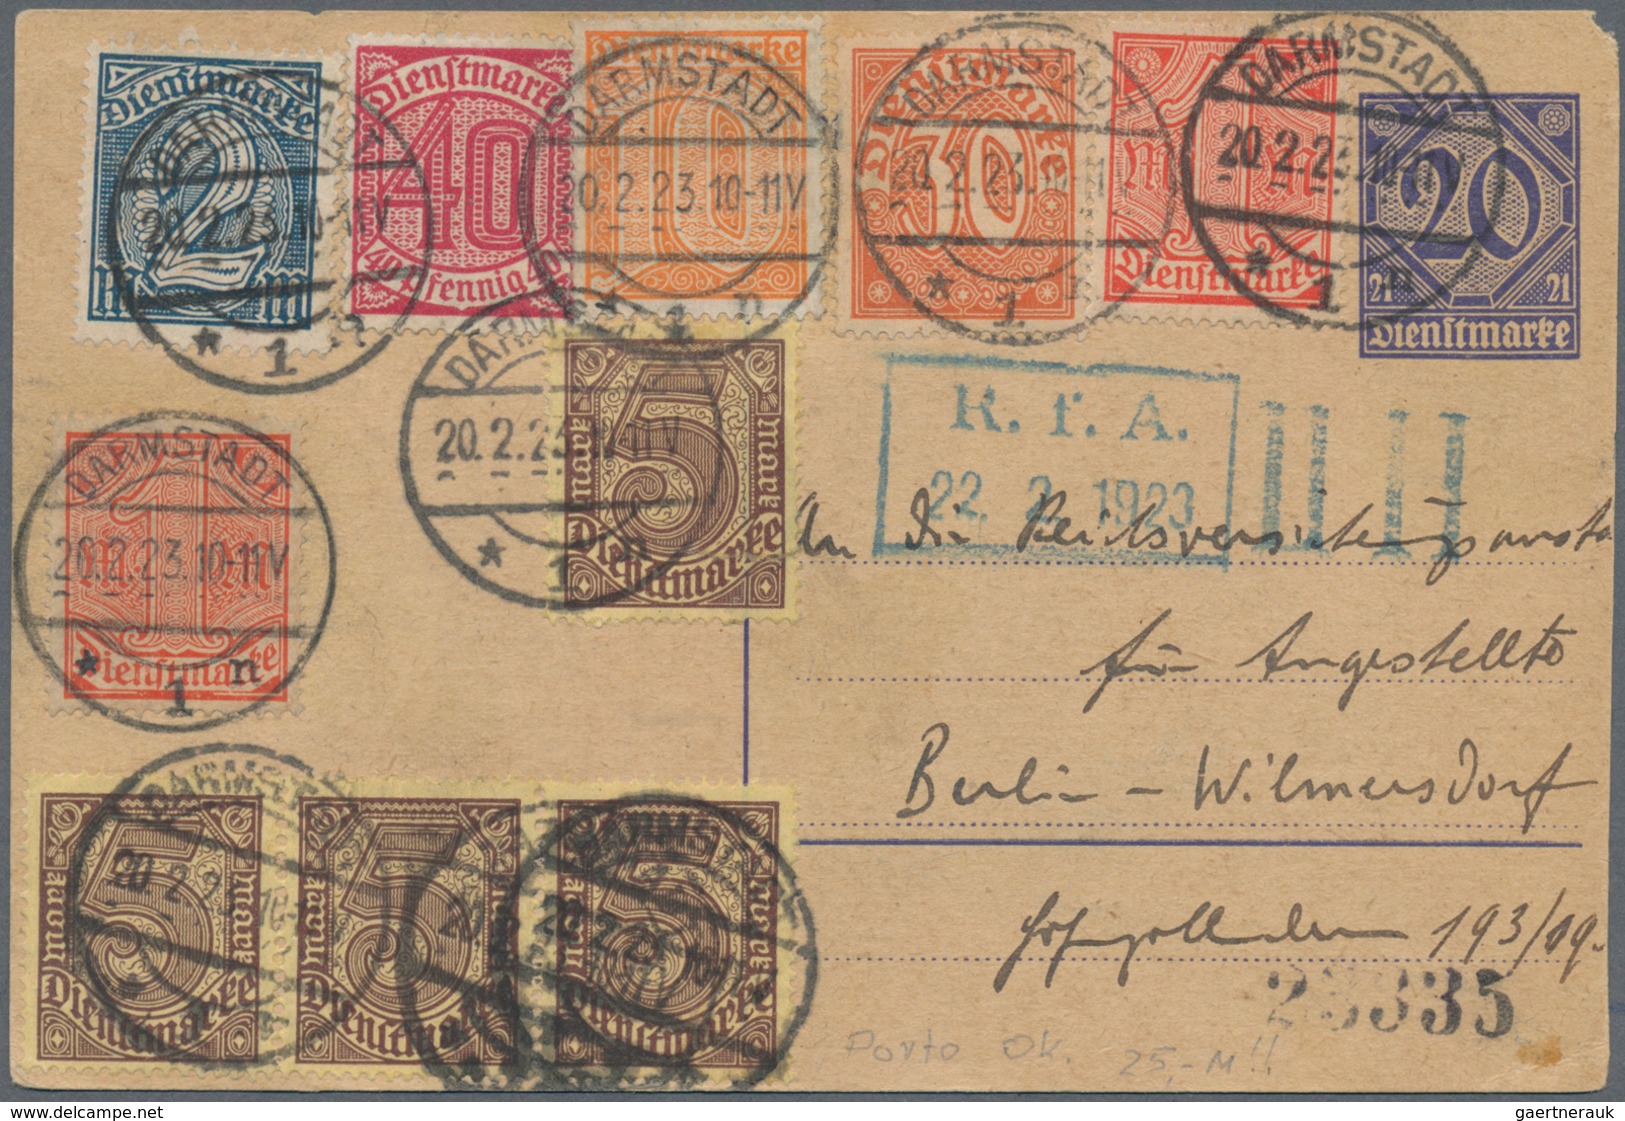 Deutsches Reich - Dienstmarken: 1921, 10 Pf In Neuer Farbe Orange Mit Anderen Dienstmarken Portorich - Dienstmarken